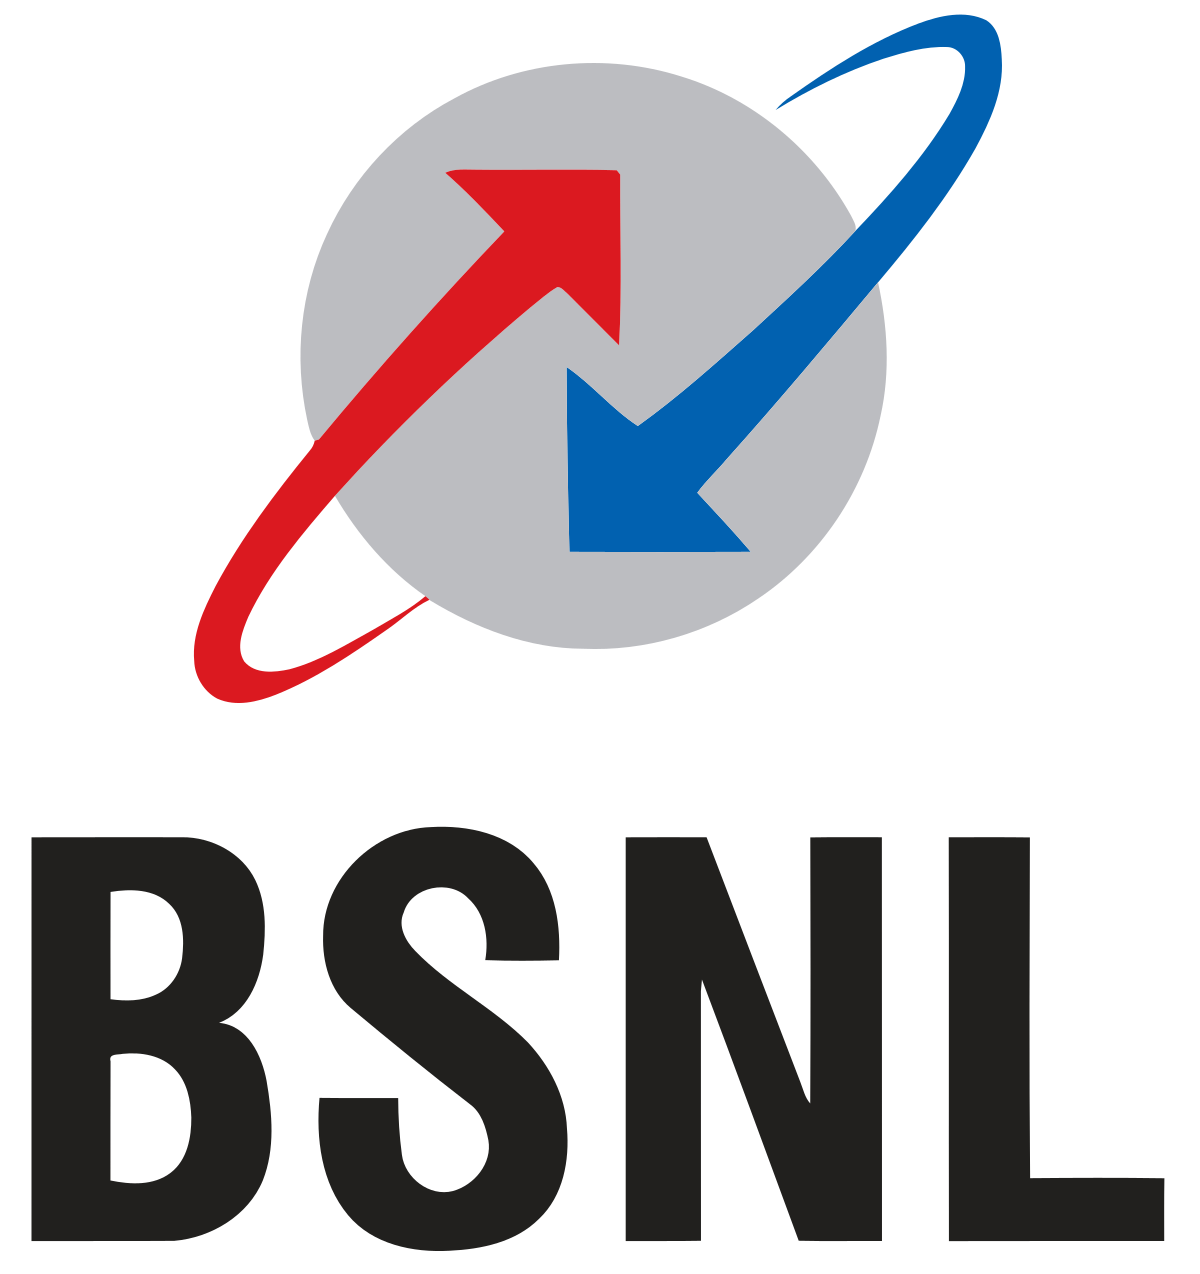 BSNL ग्राहकों के लिए अच्छी खबर यह है कि इन पांच योजनाओं का लाभ इतने रुपये से शुरू हुआ है,जानिए